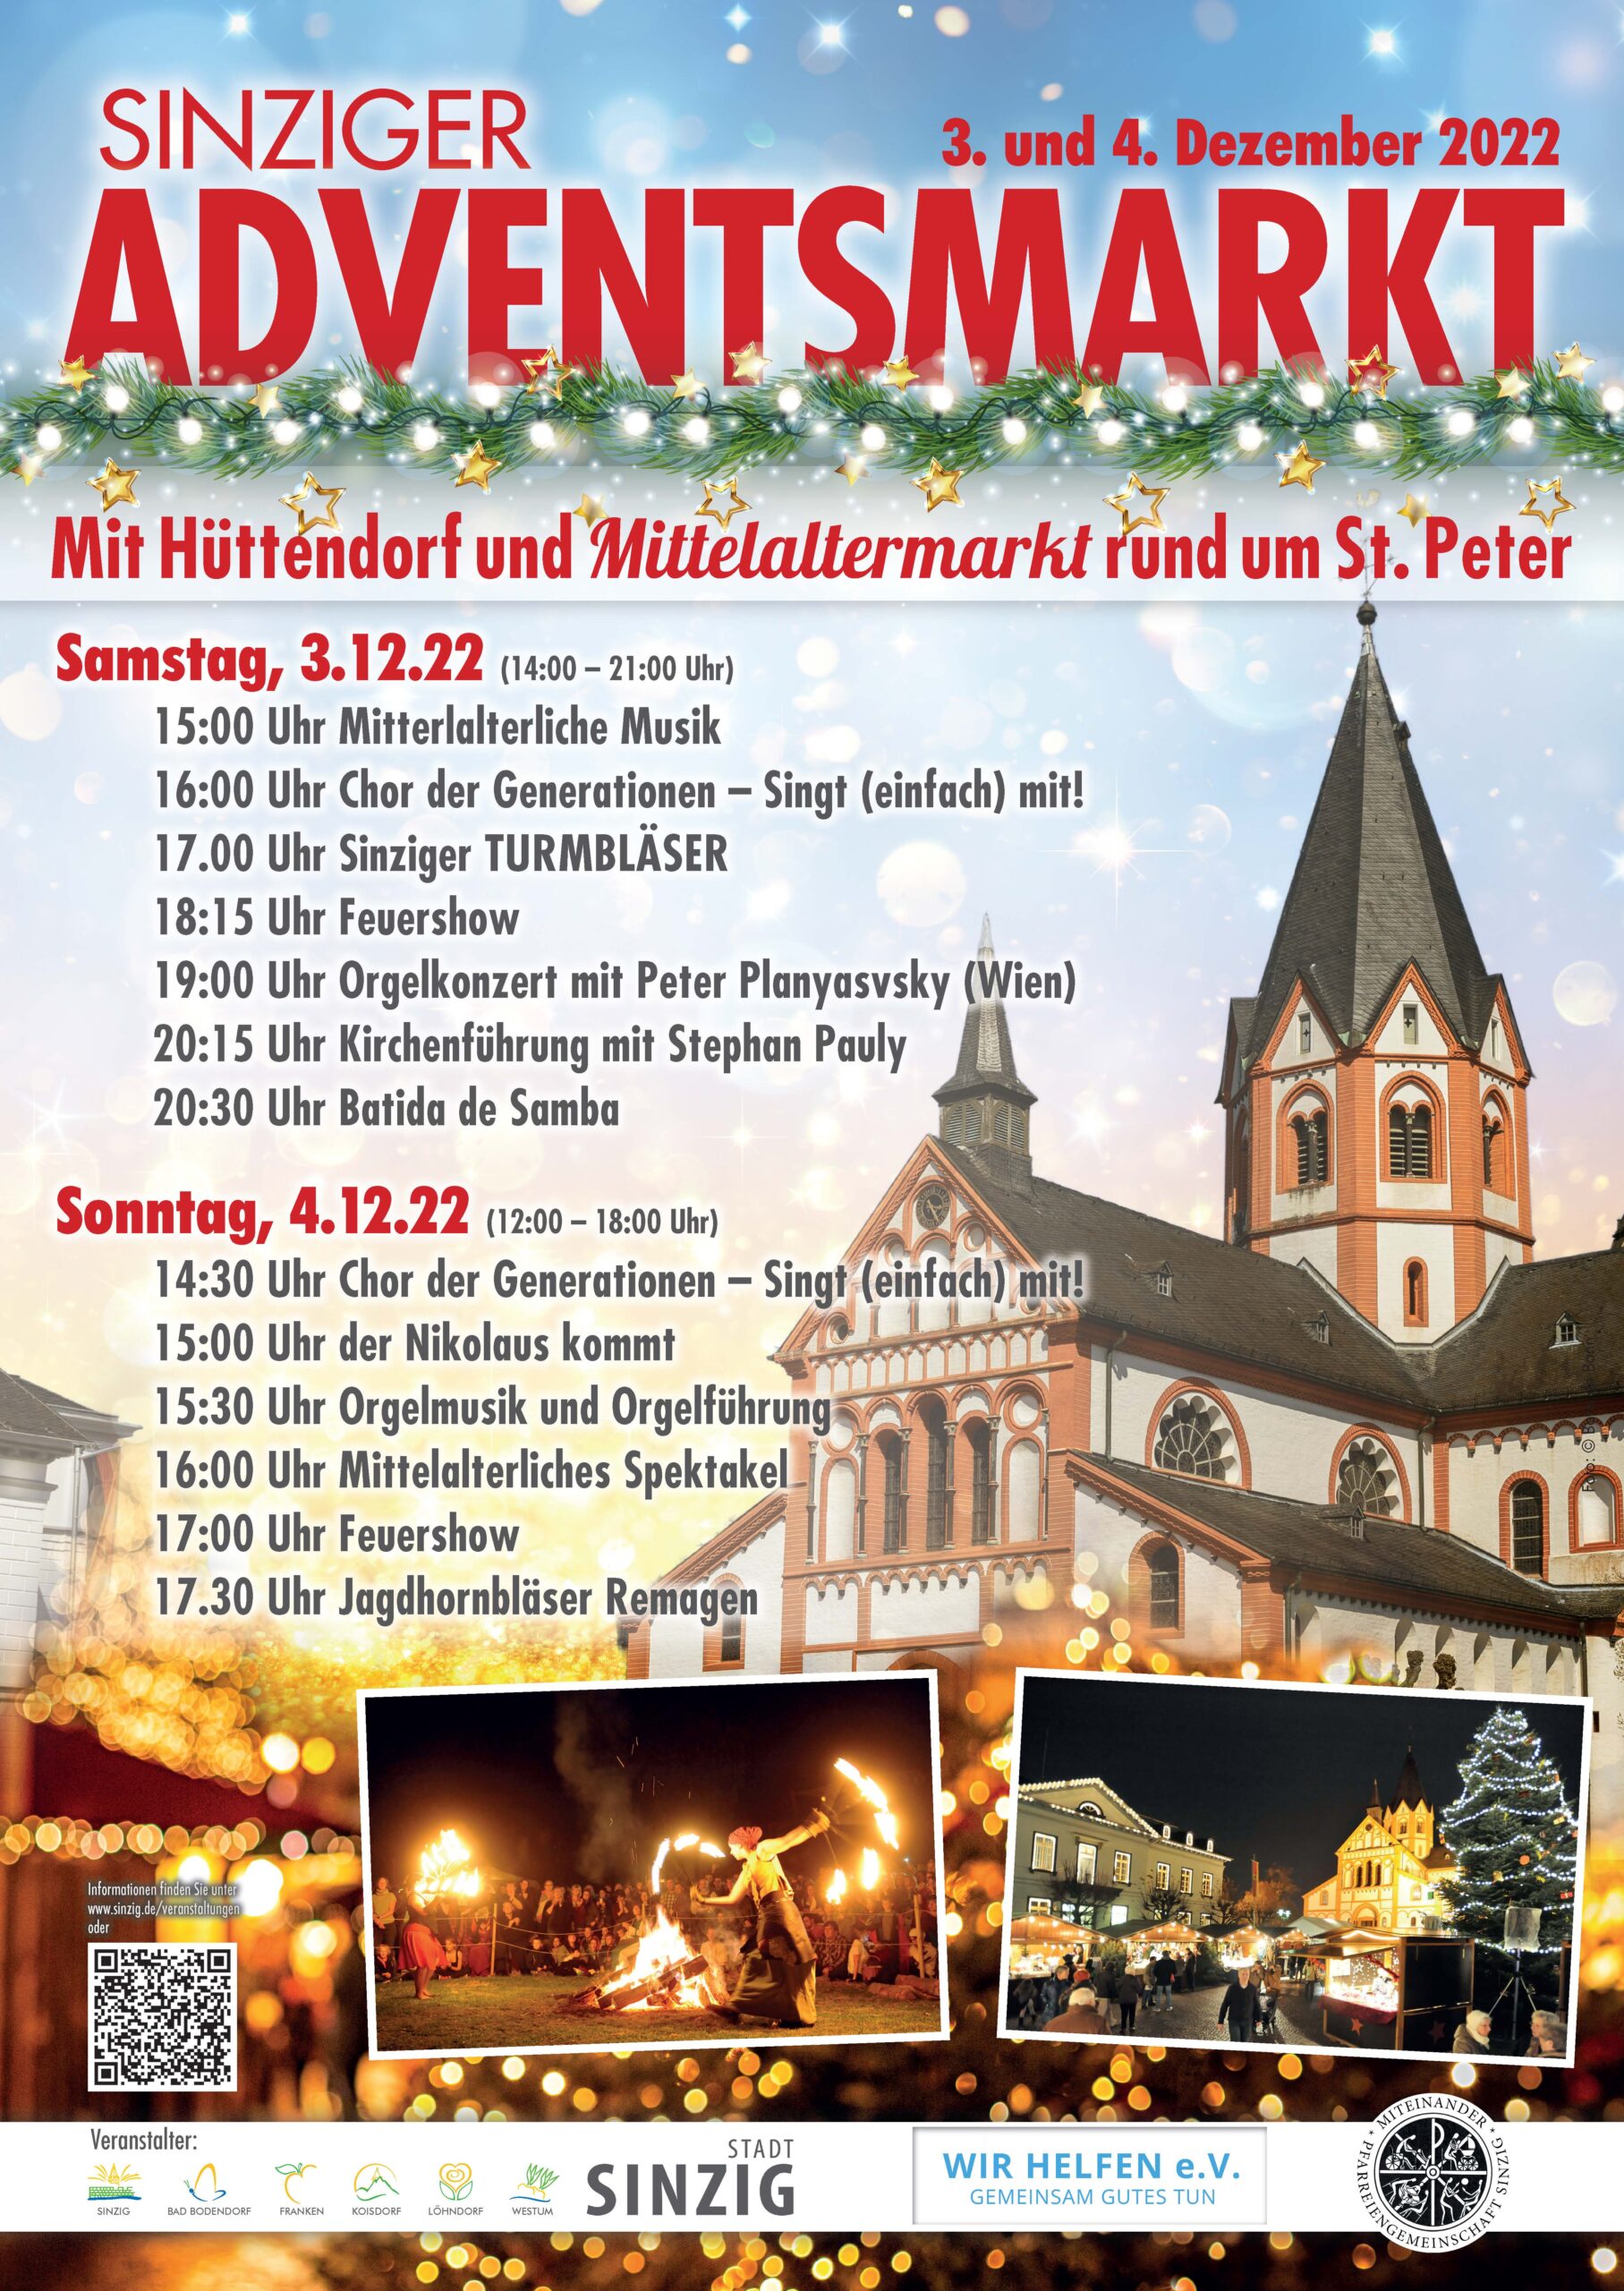 Wieder Adventsmarkt in Sinzig - am 3. und 4. Dezember!